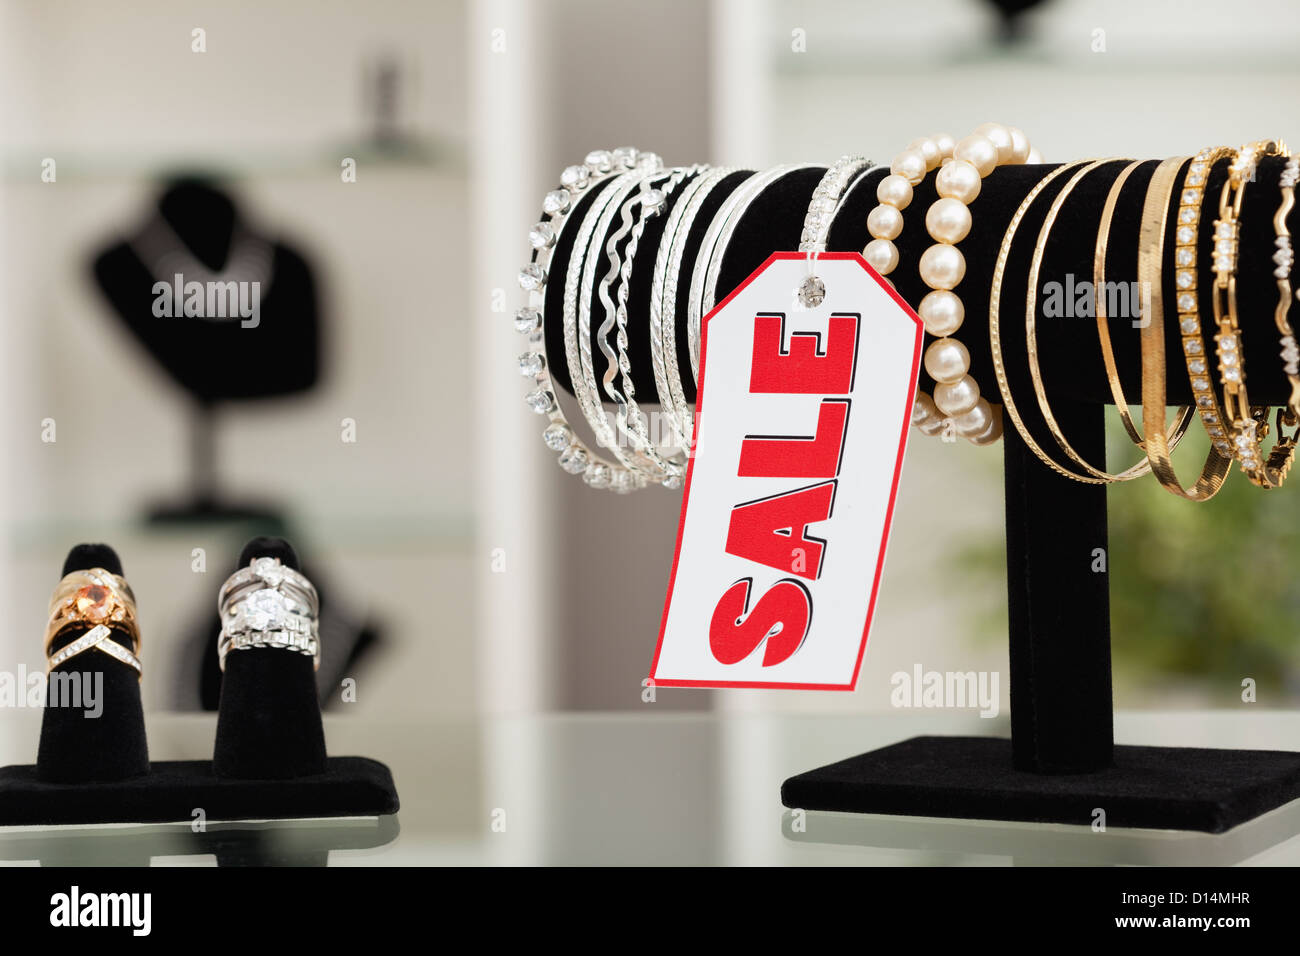 États-unis, Illinois, Metamora, bracelets et bagues sur l'affichage en magasin de bijoux Banque D'Images